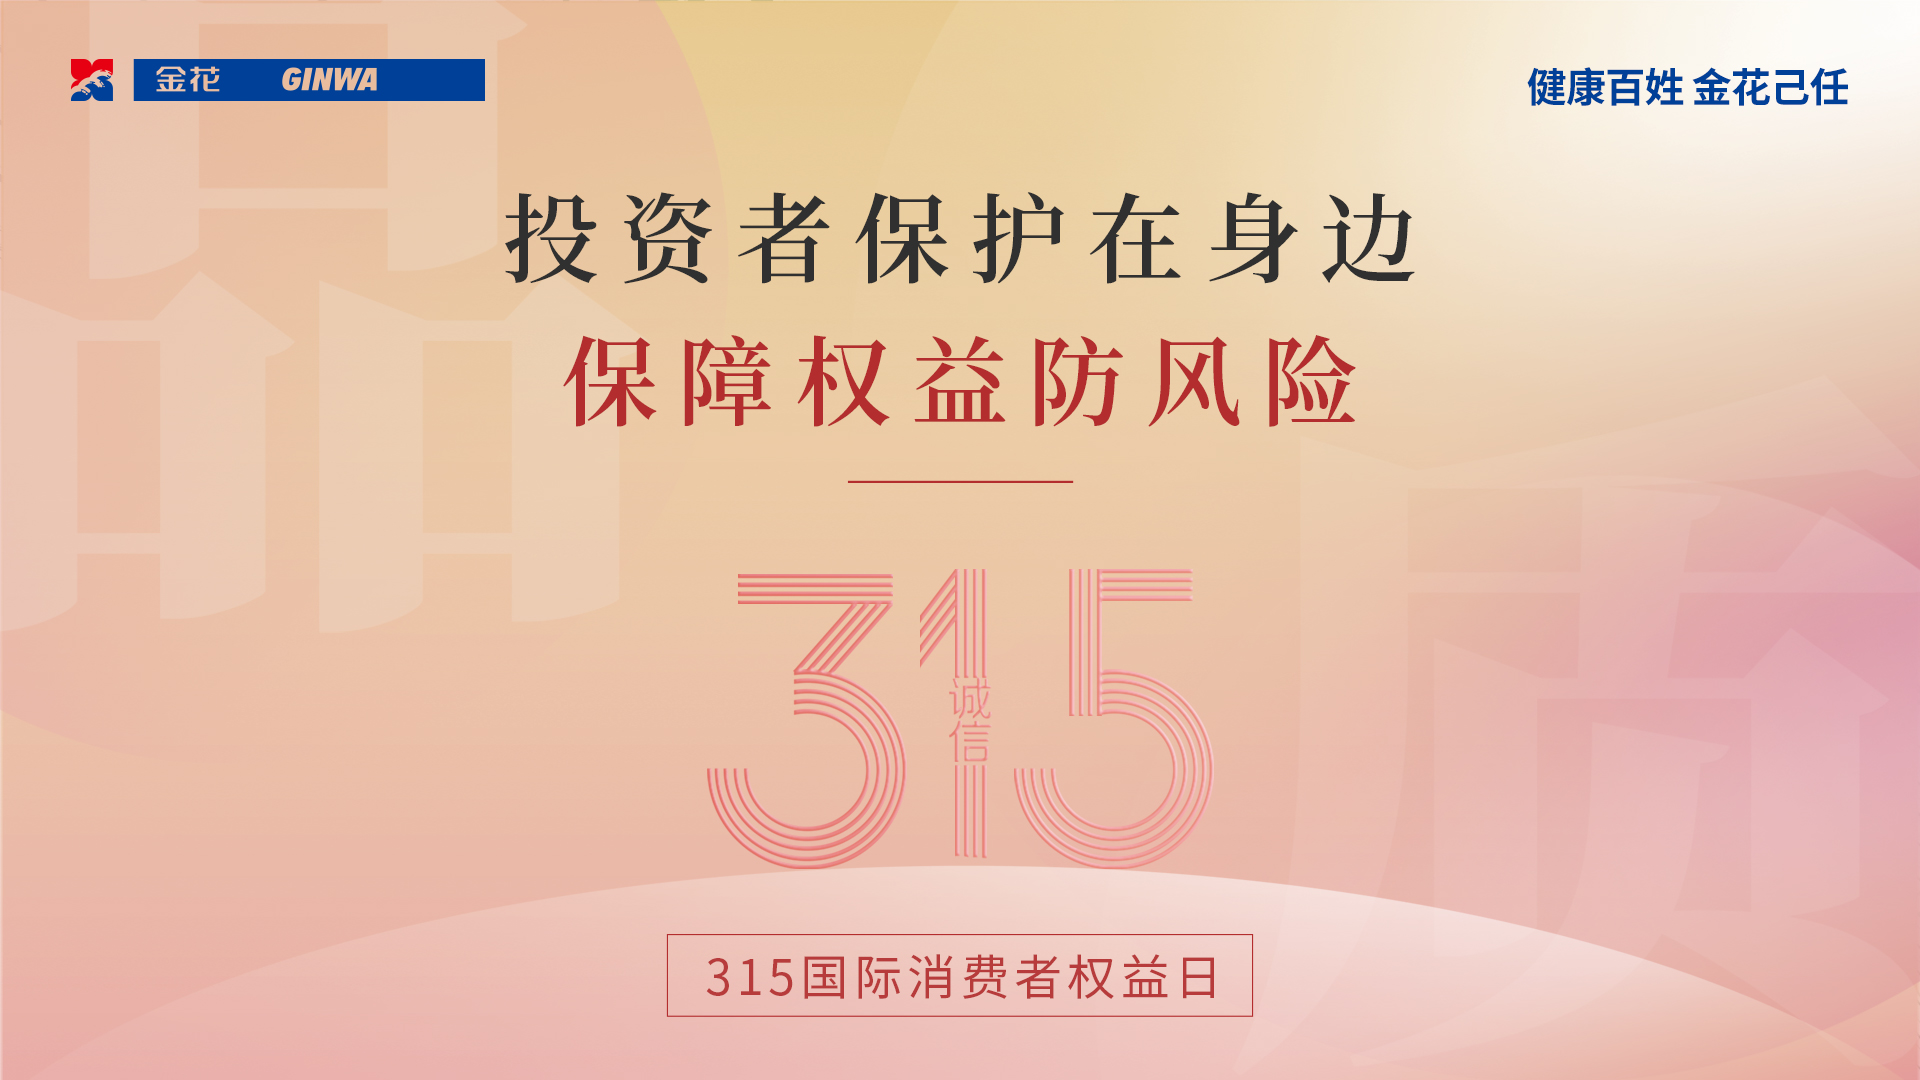 【3.15国际消费者权益日】中国证监会投资者保护典型案例